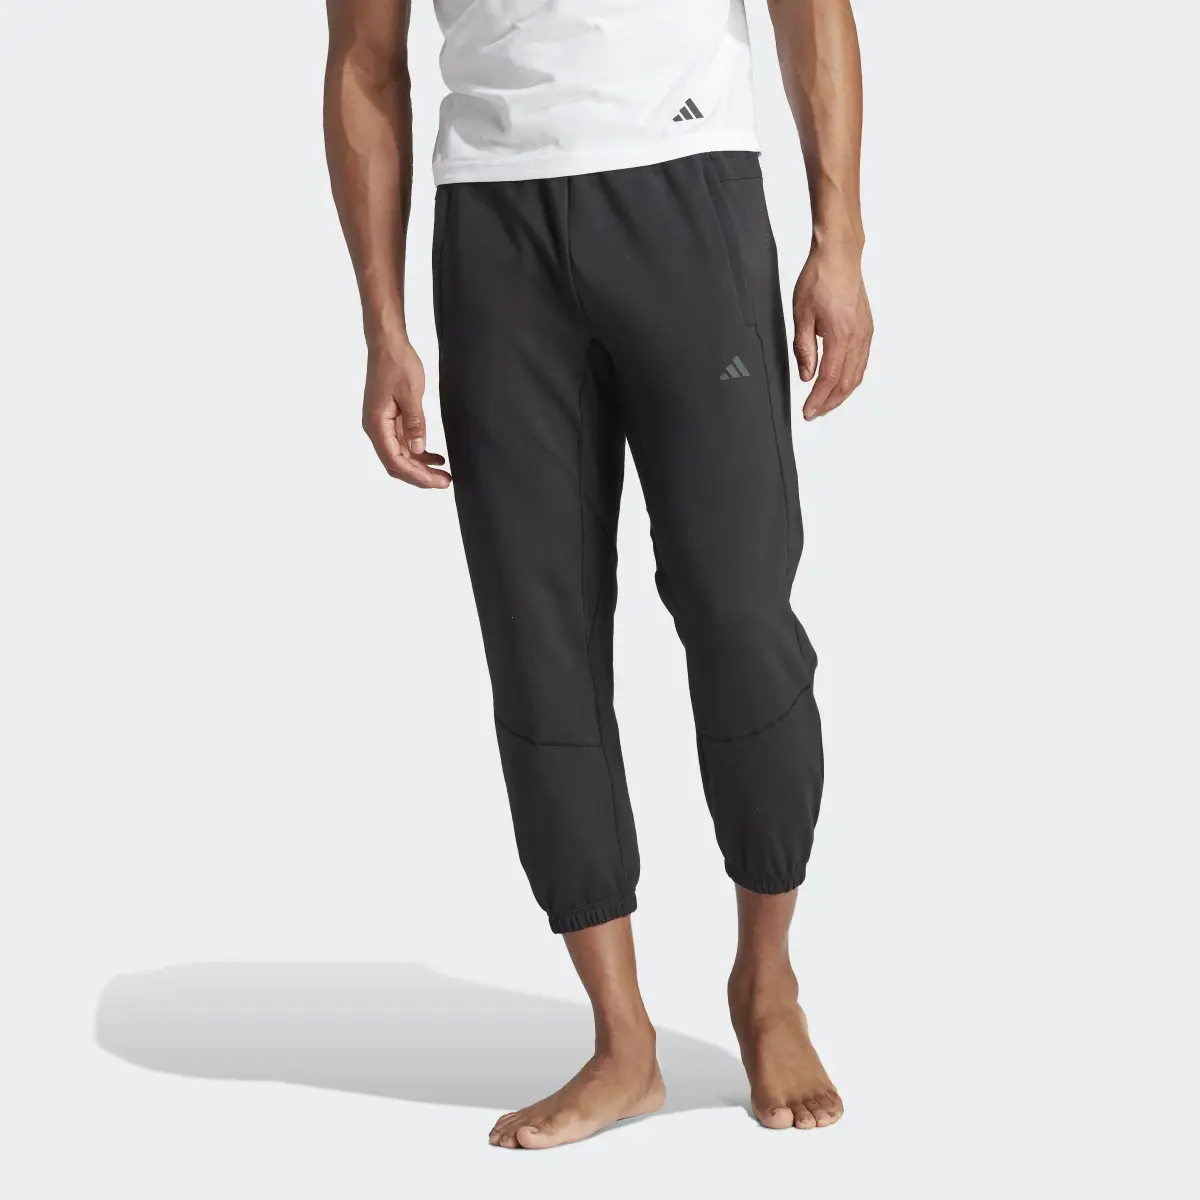 Adidas Designed for Training Yoga Training 7/8 Pants. 1